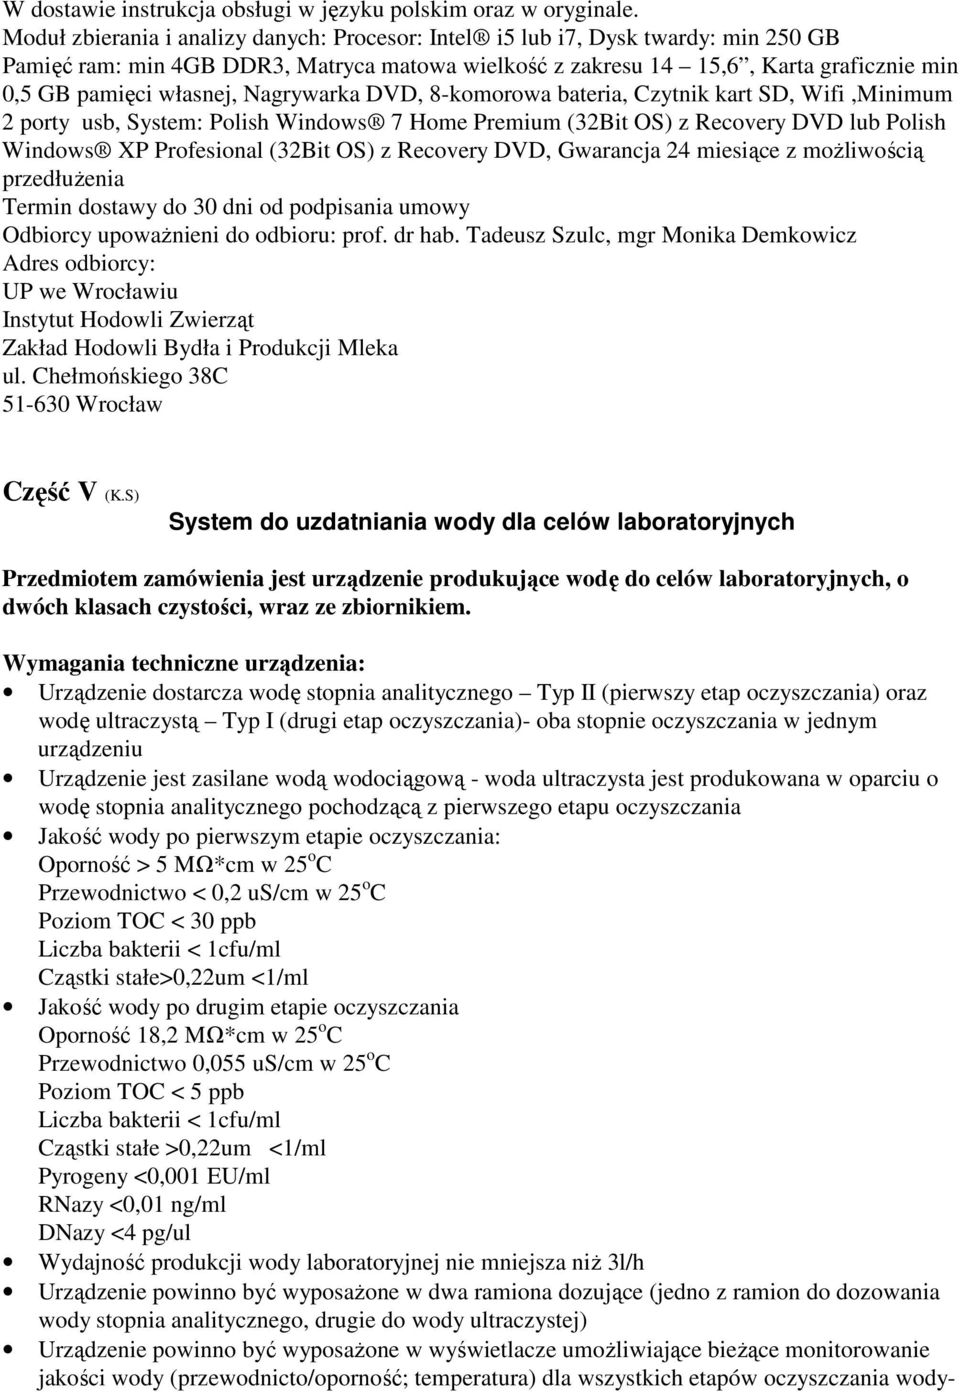 Nagrywarka DVD, 8-komorowa bateria, Czytnik kart SD, Wifi,Minimum 2 porty usb, System: Polish Windows 7 Home Premium (32Bit OS) z Recovery DVD lub Polish Windows XP Profesional (32Bit OS) z Recovery